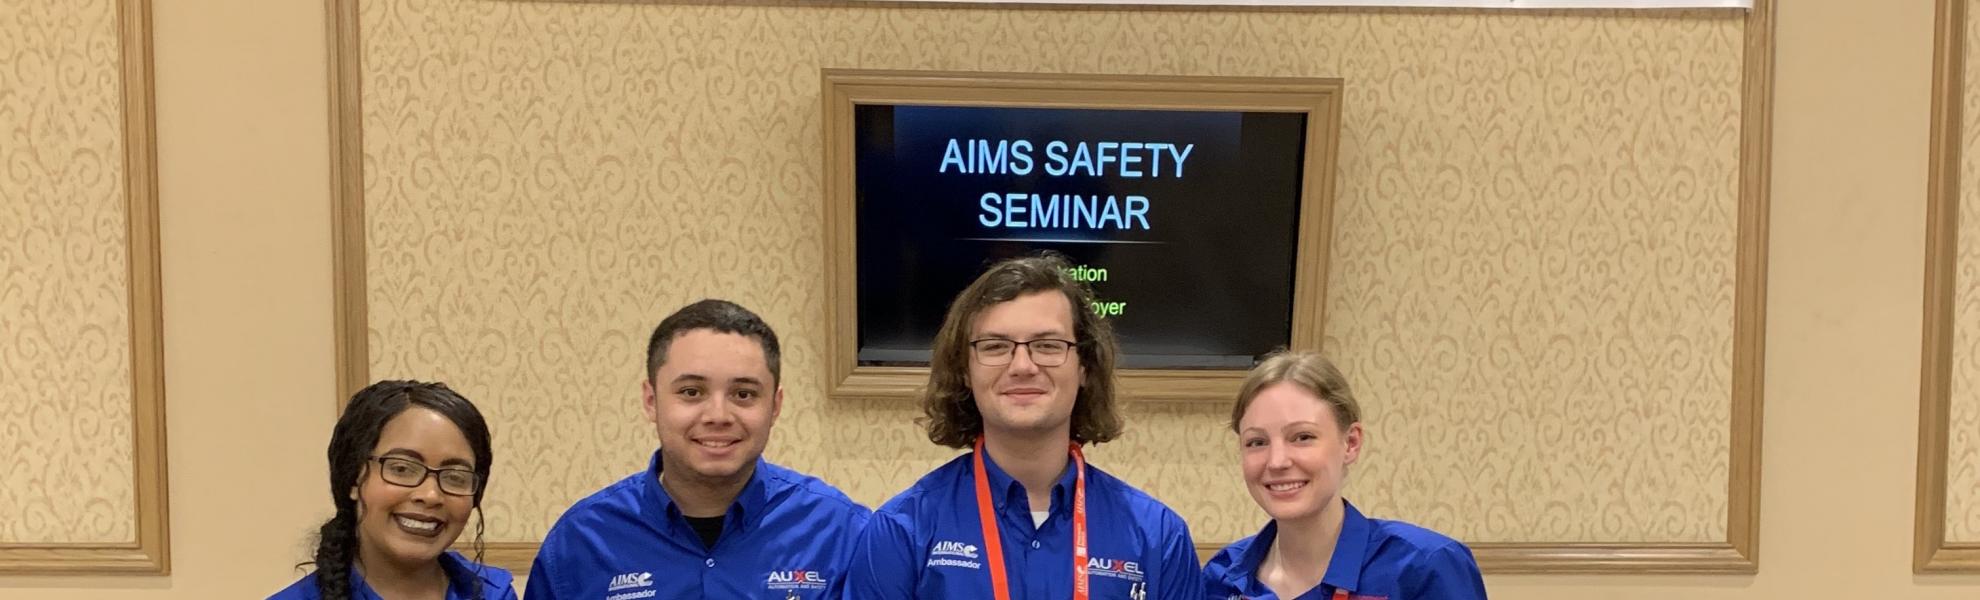 AIMS Safety Seminar ambassadors